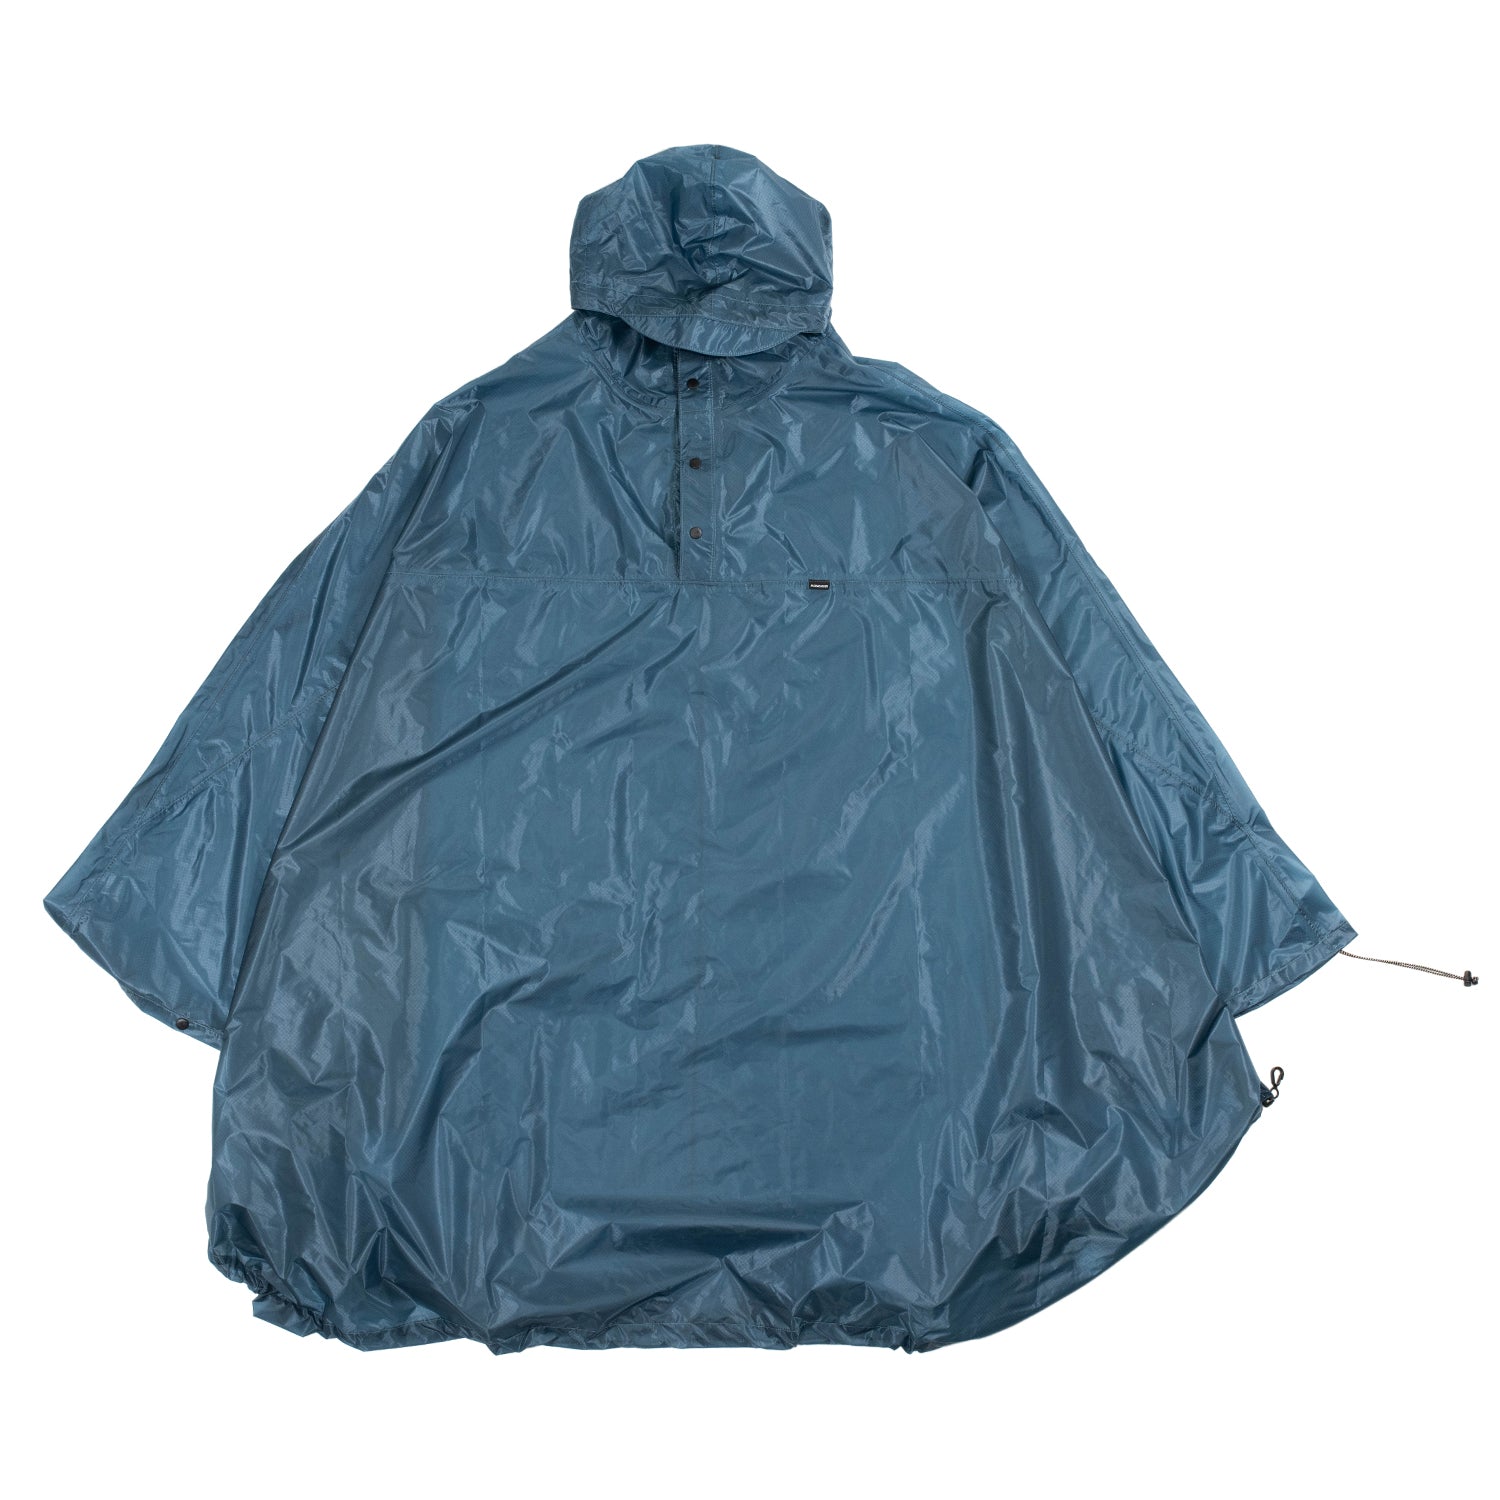 FAIRWEATHER Packable Rain Poncho